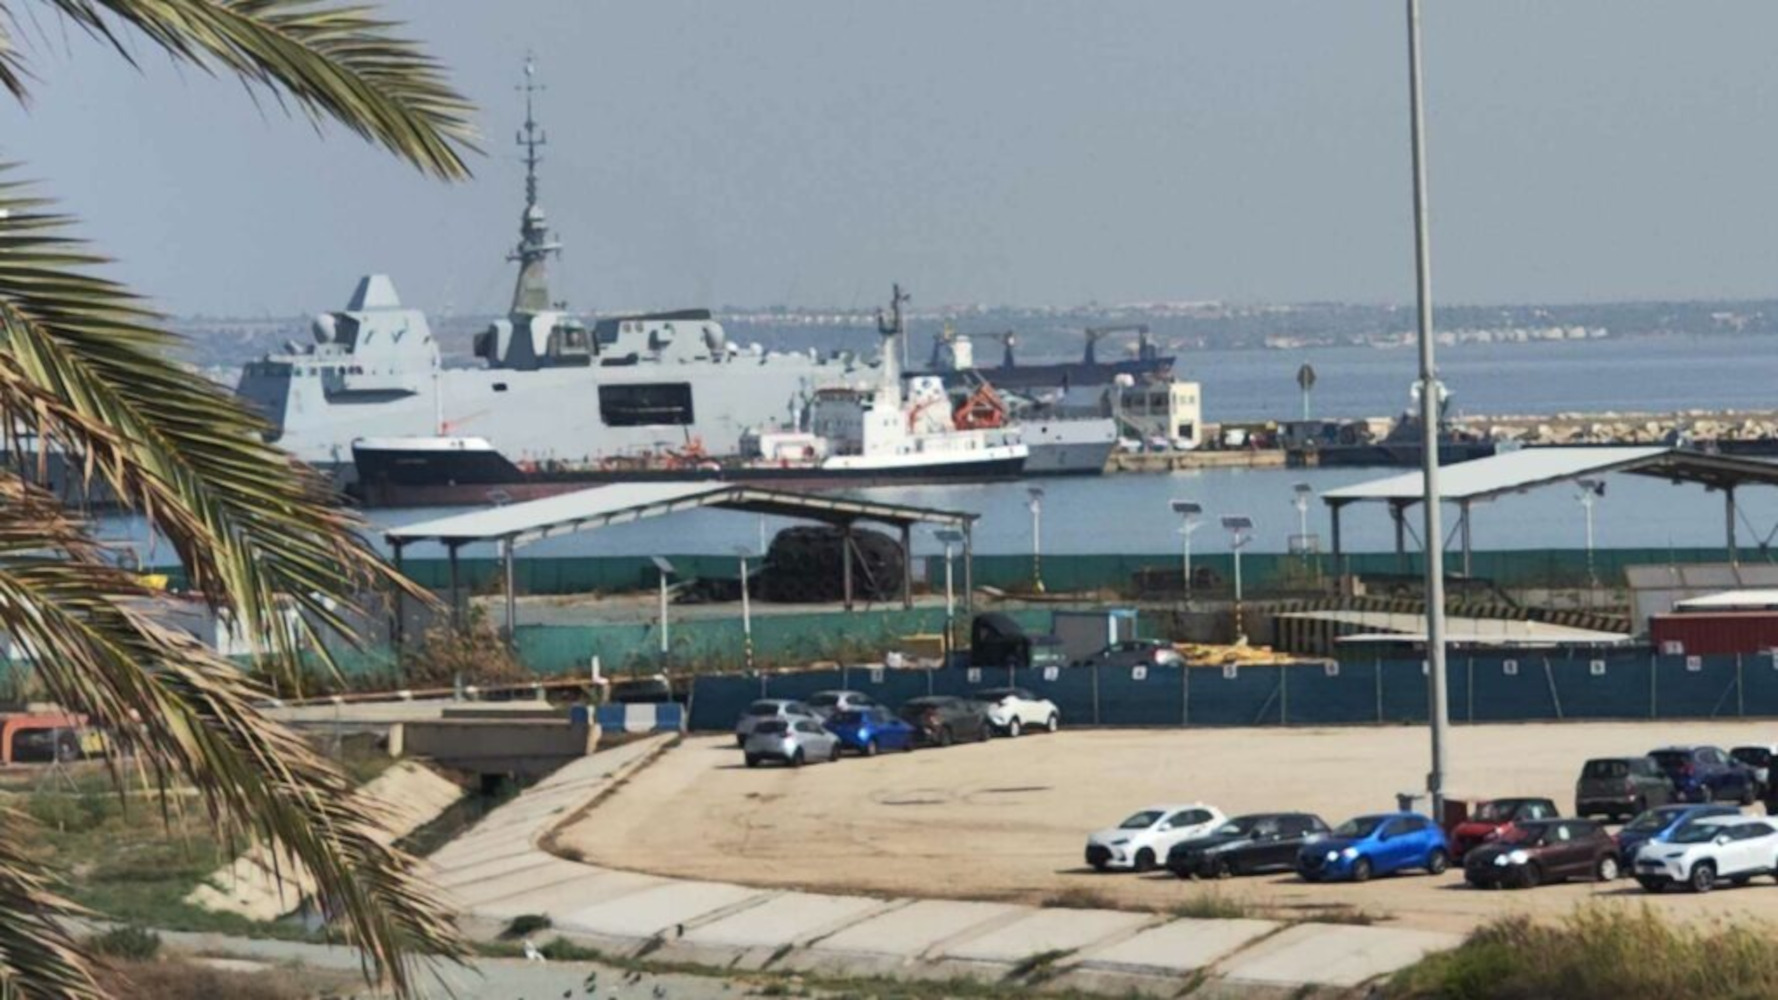 Κύπρος: Νεκρός ο δύτης που είχε χαθεί στο ναυάγιο «Ζηνοβία» – Παγιδεύτηκε στο μηχανοστάσιο